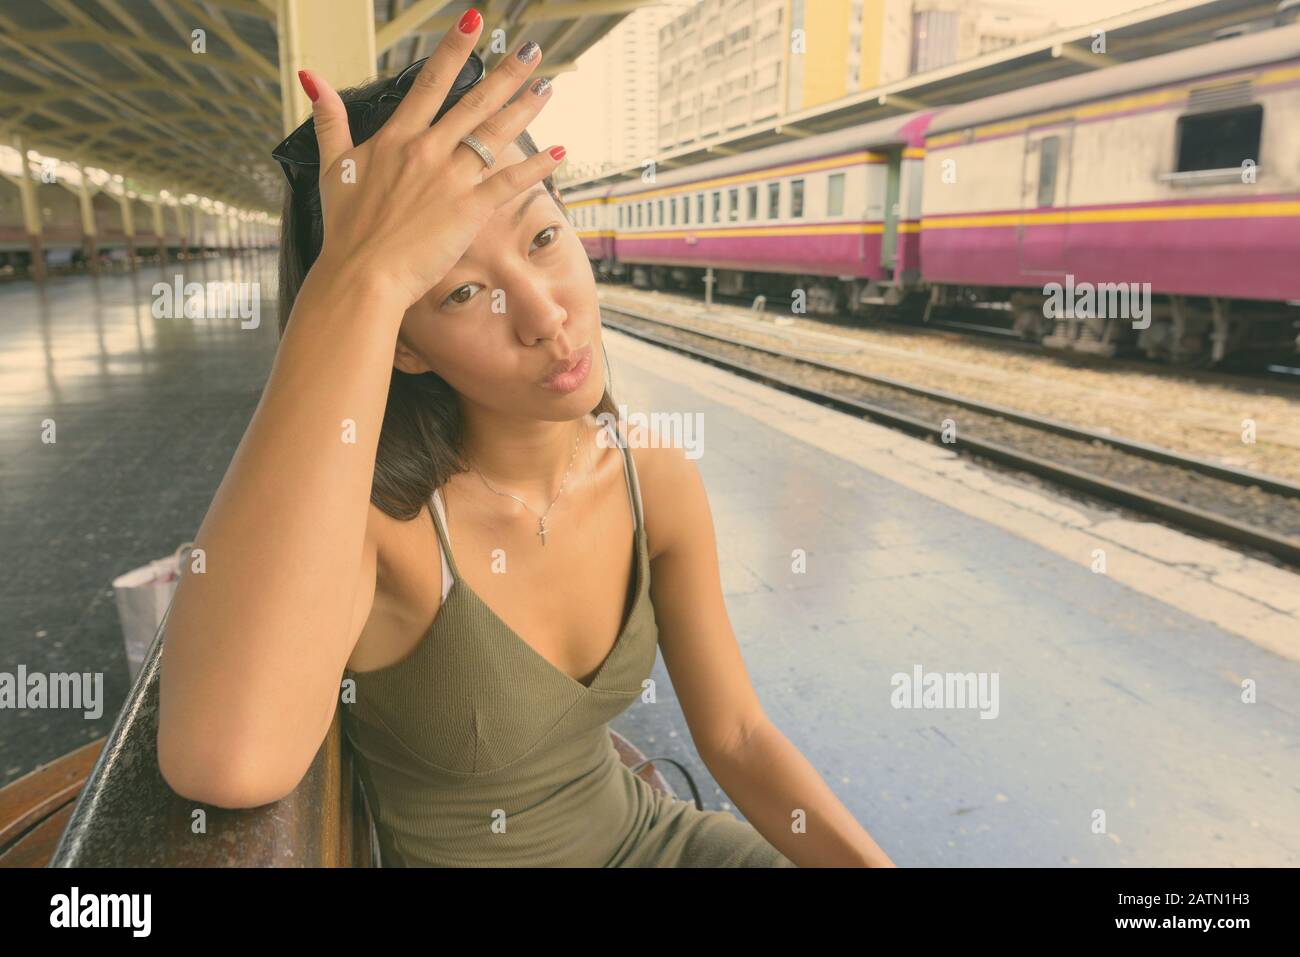 Young beautiful tourist woman exploring the city of Bangkok Stock Photo